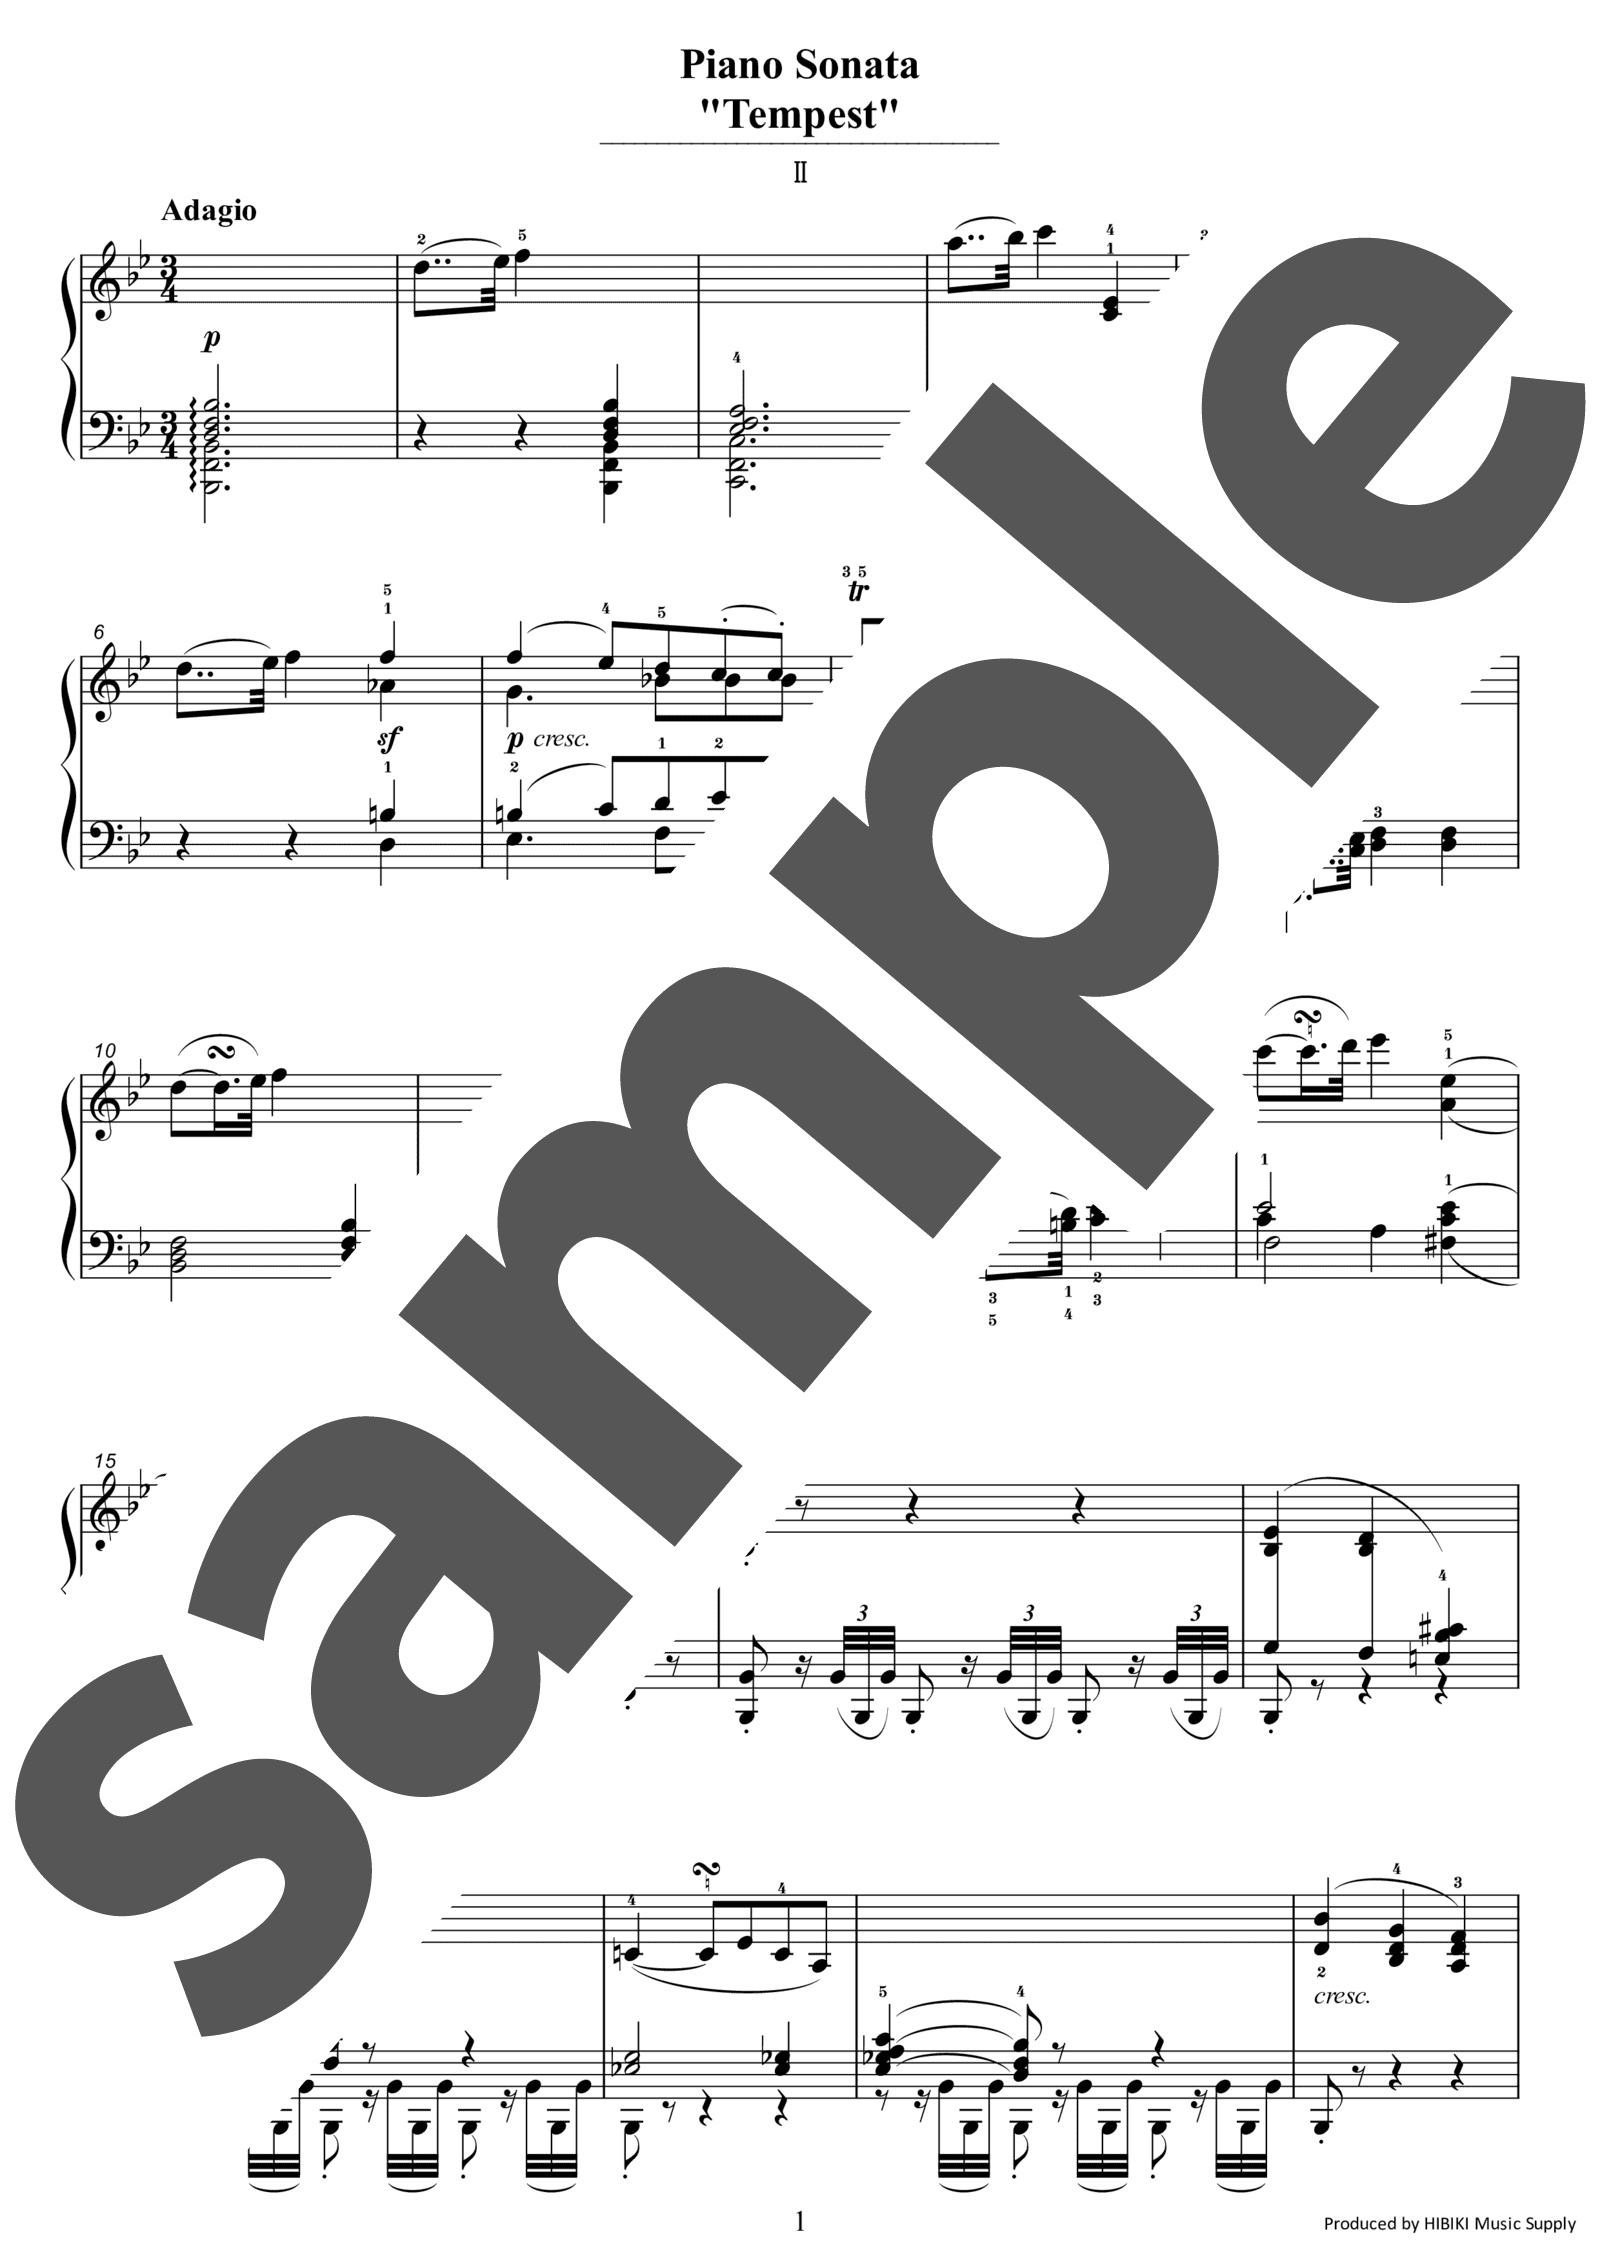 「ピアノソナタ第17番「テンペスト」第2楽章」のサンプル楽譜